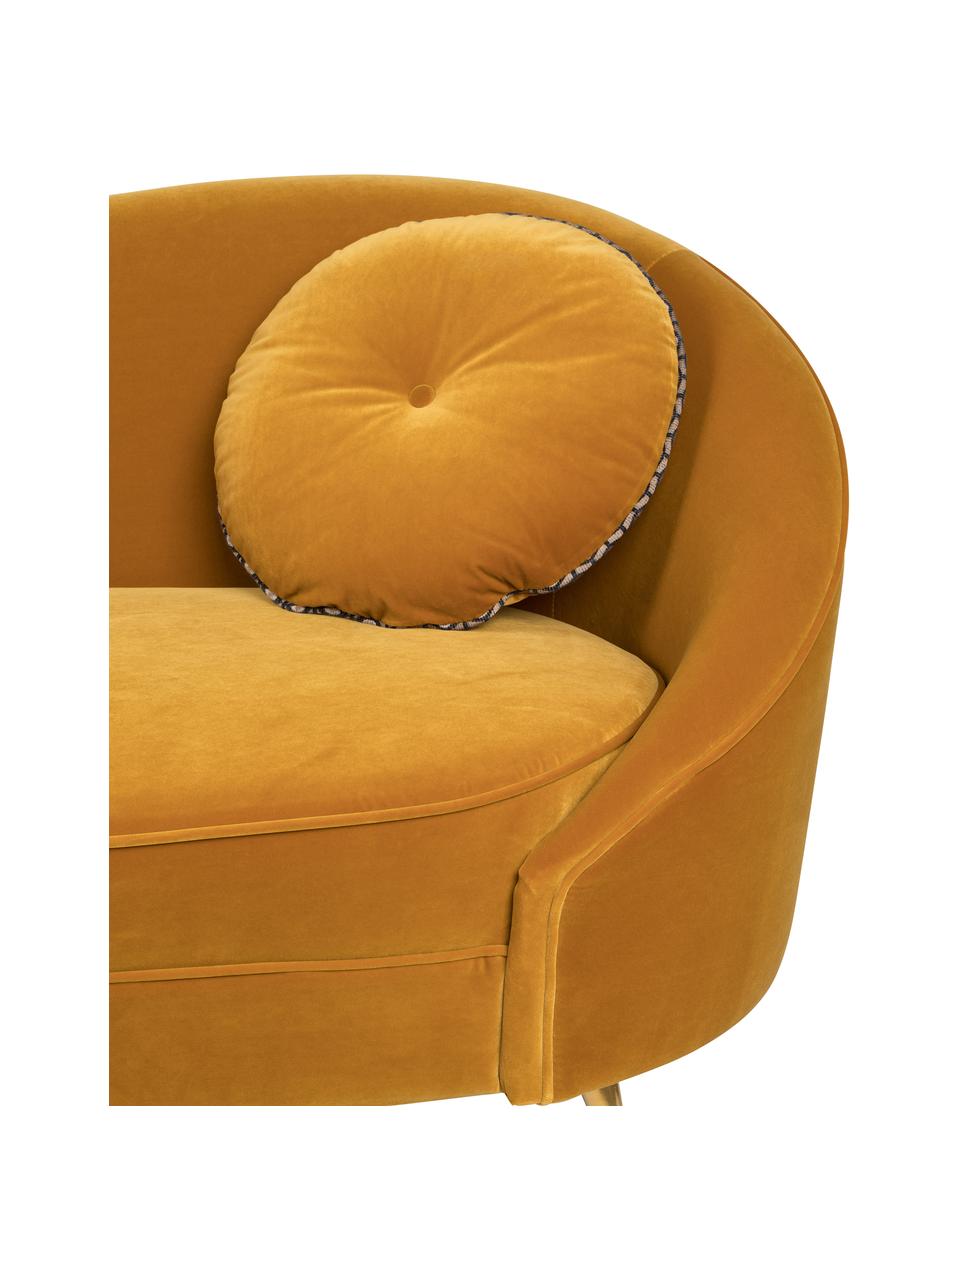 Designer Samt-Sofa I Am Not A Croissant (2-Sitzer) in Gelb, Bezug: Polyestersamt 30 000 Sche, Rahmen: Sperrholz, Samt Ockergelb, B 168 x H 76 cm